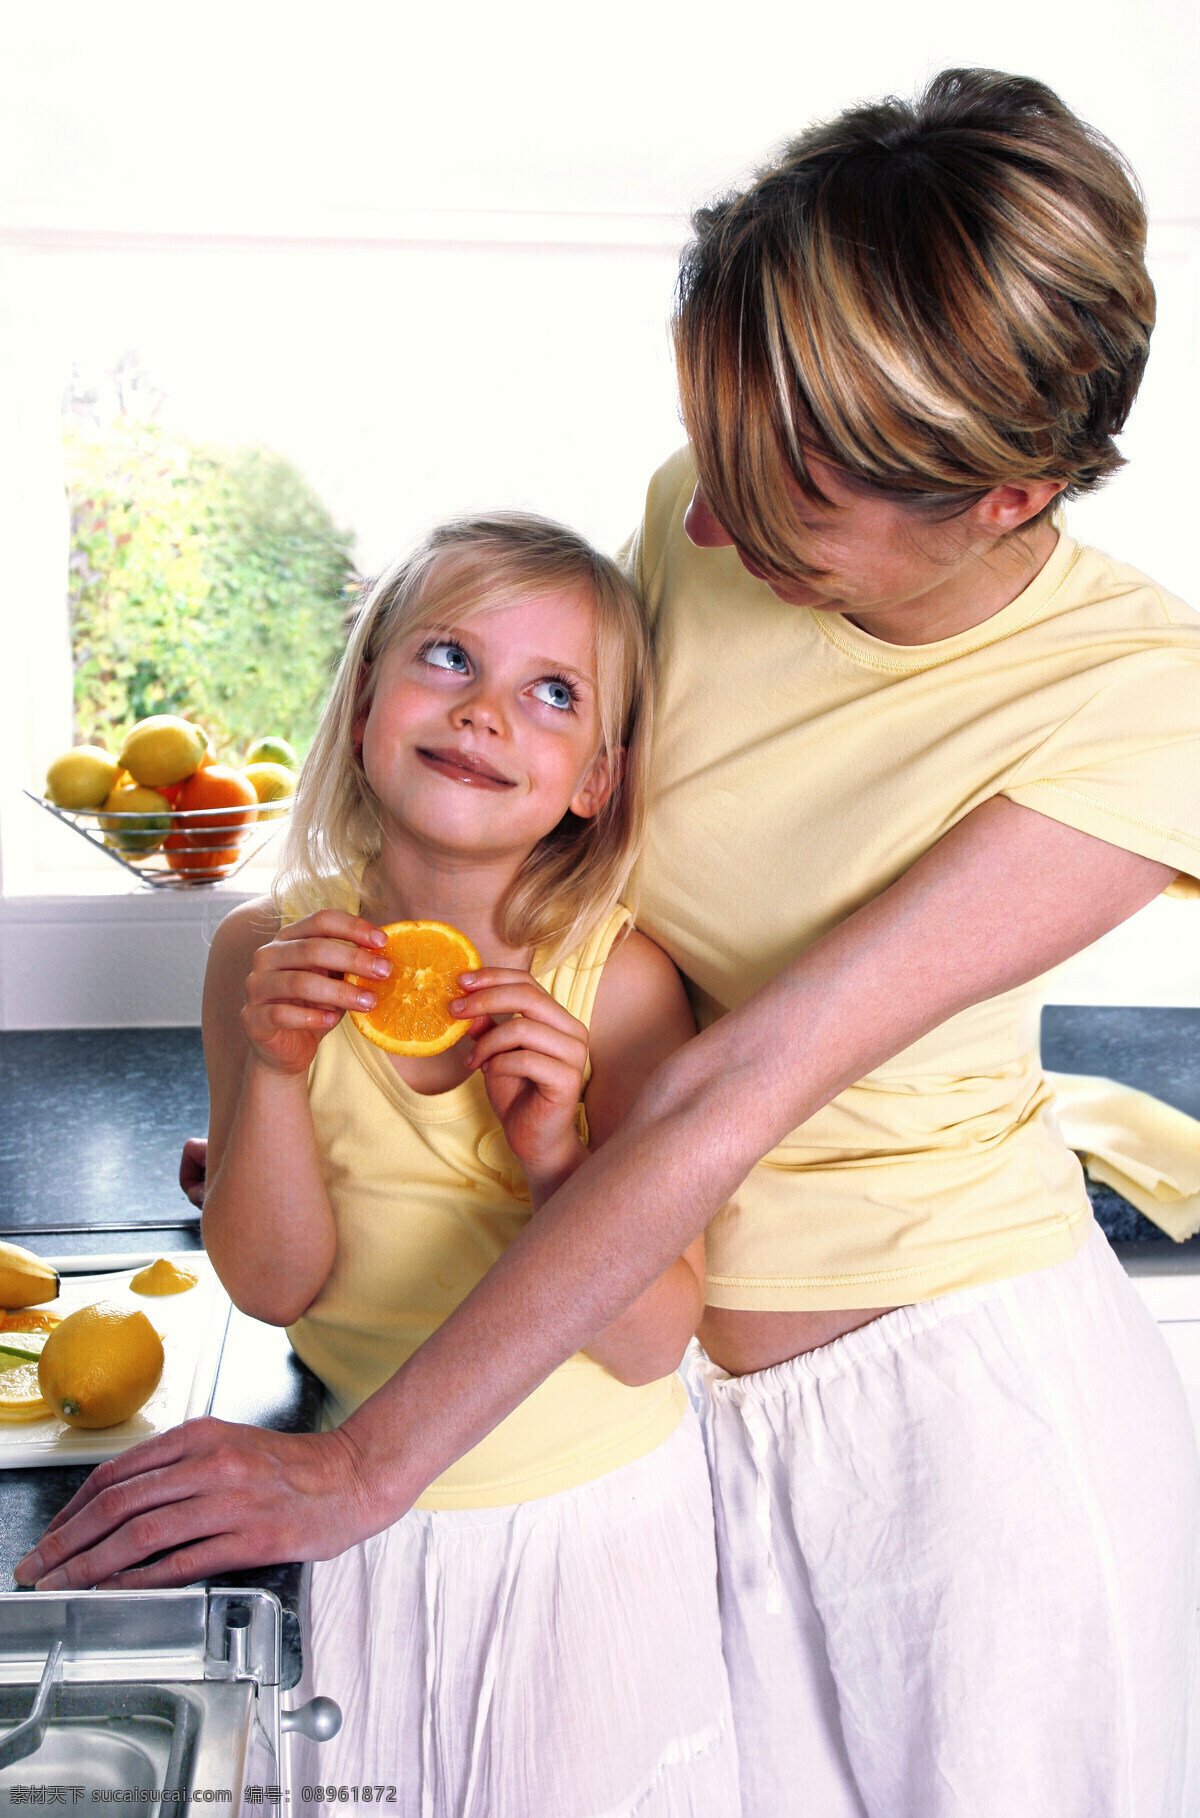 依偎 母亲 女儿 人物 家庭 美满 幸福 亲情 温馨 切水果 橙子 母女 生活人物 人物图片